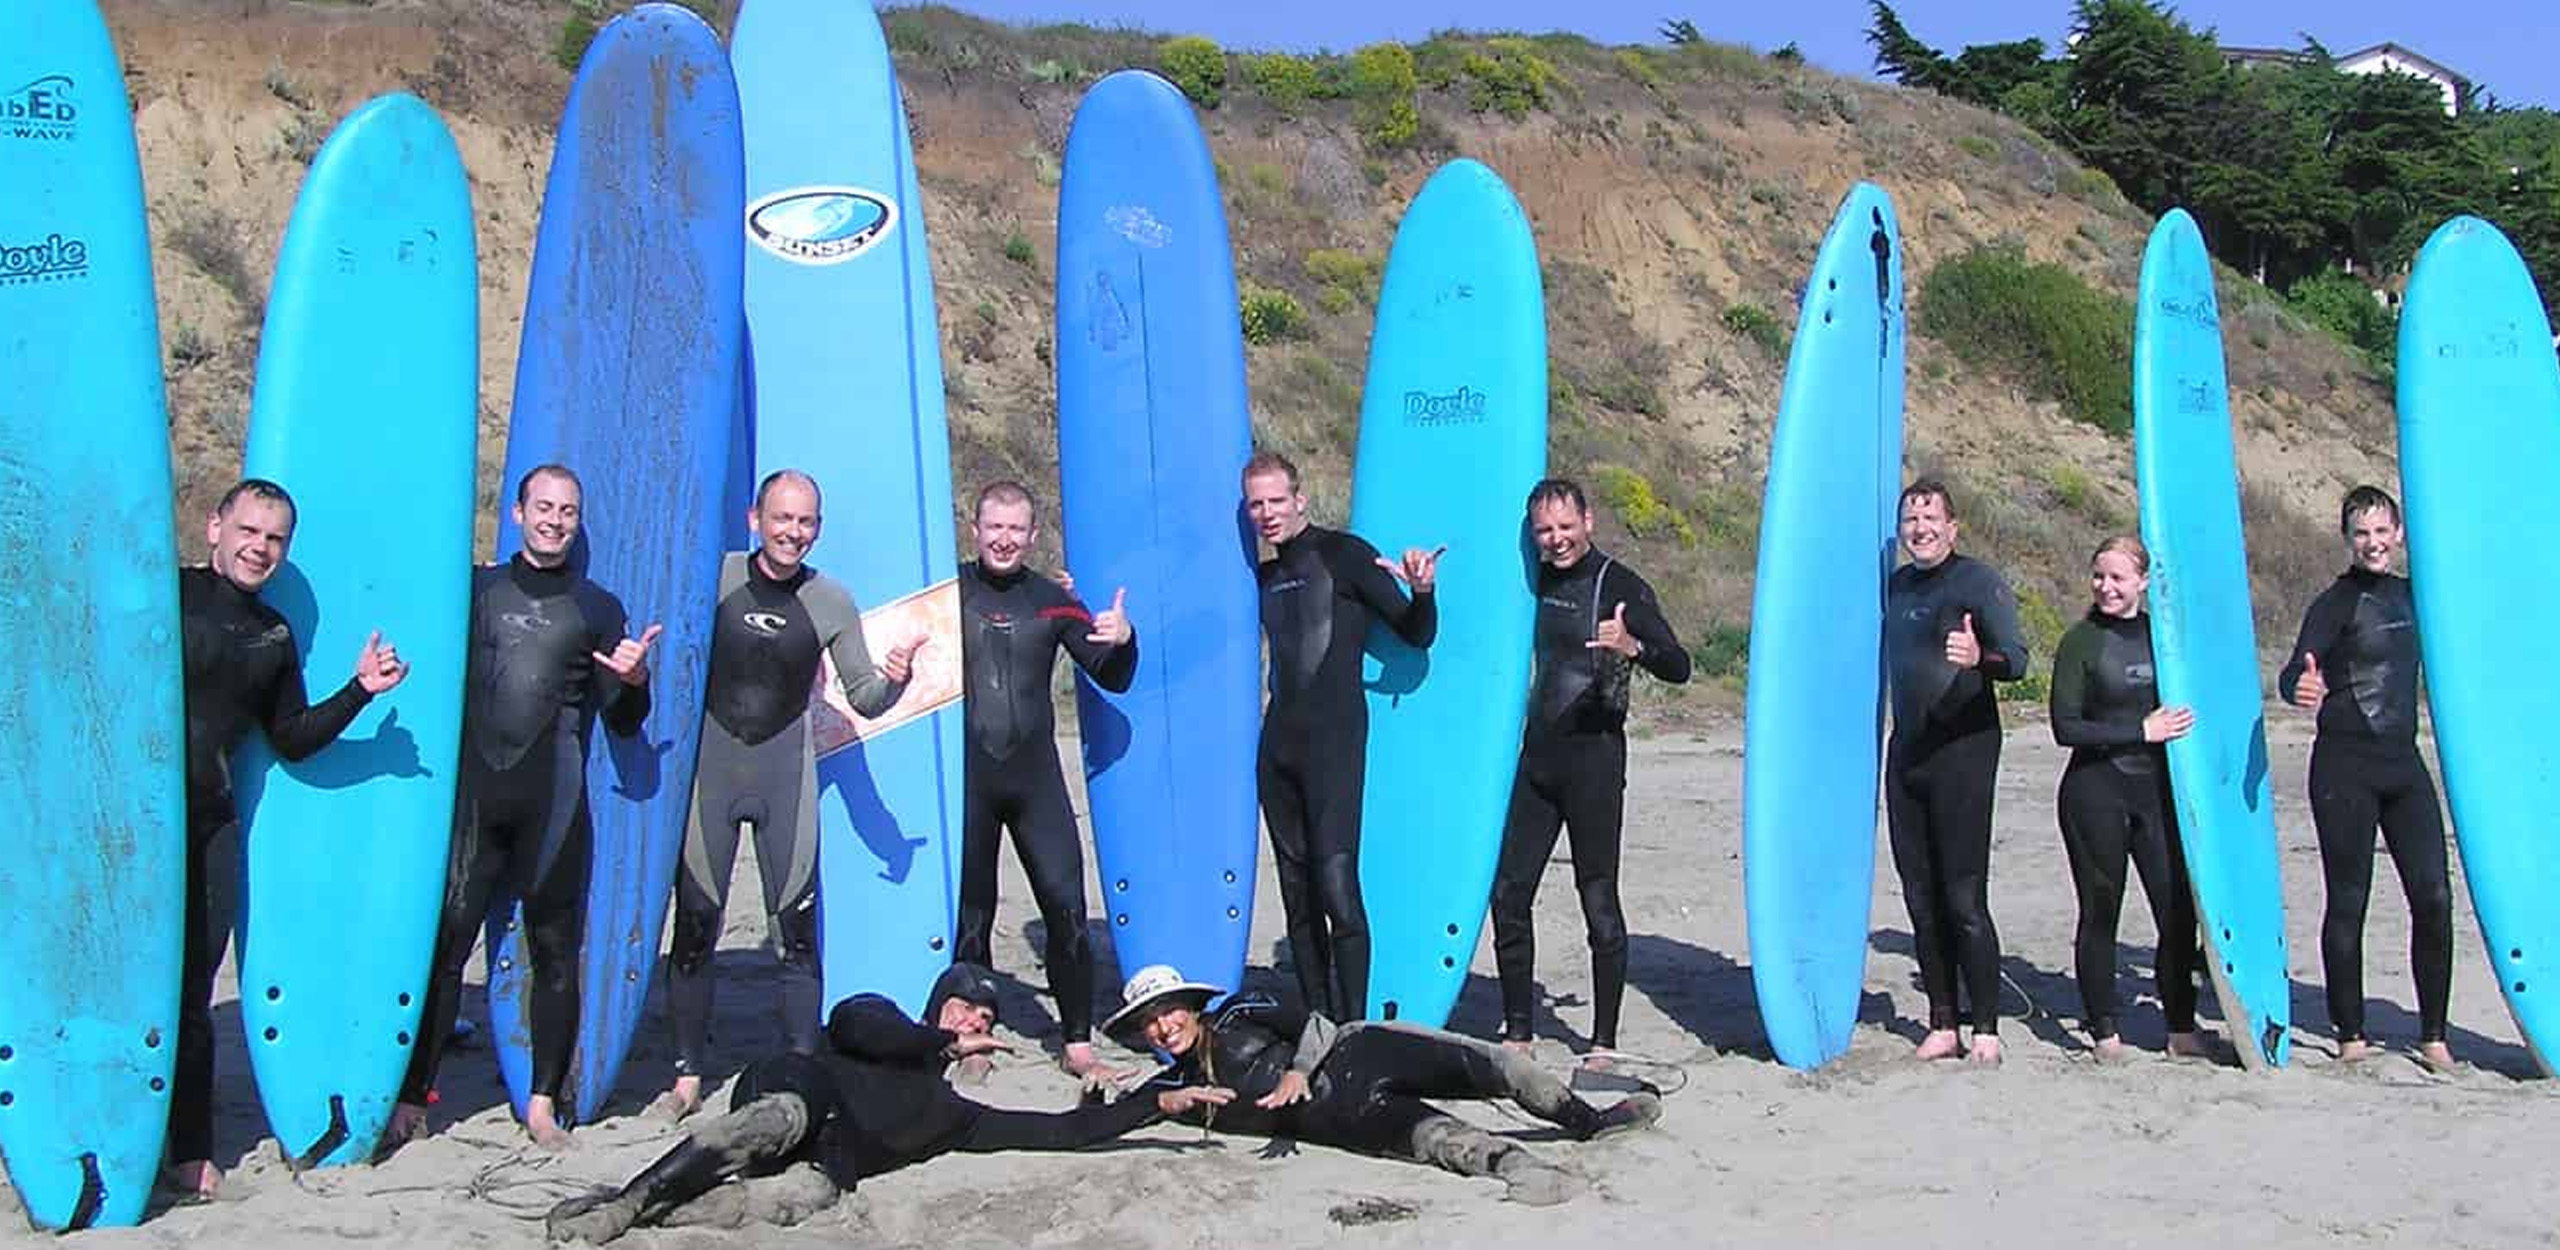 Sufer stehen nebeneinander und halten alle ein blaues Surfboard